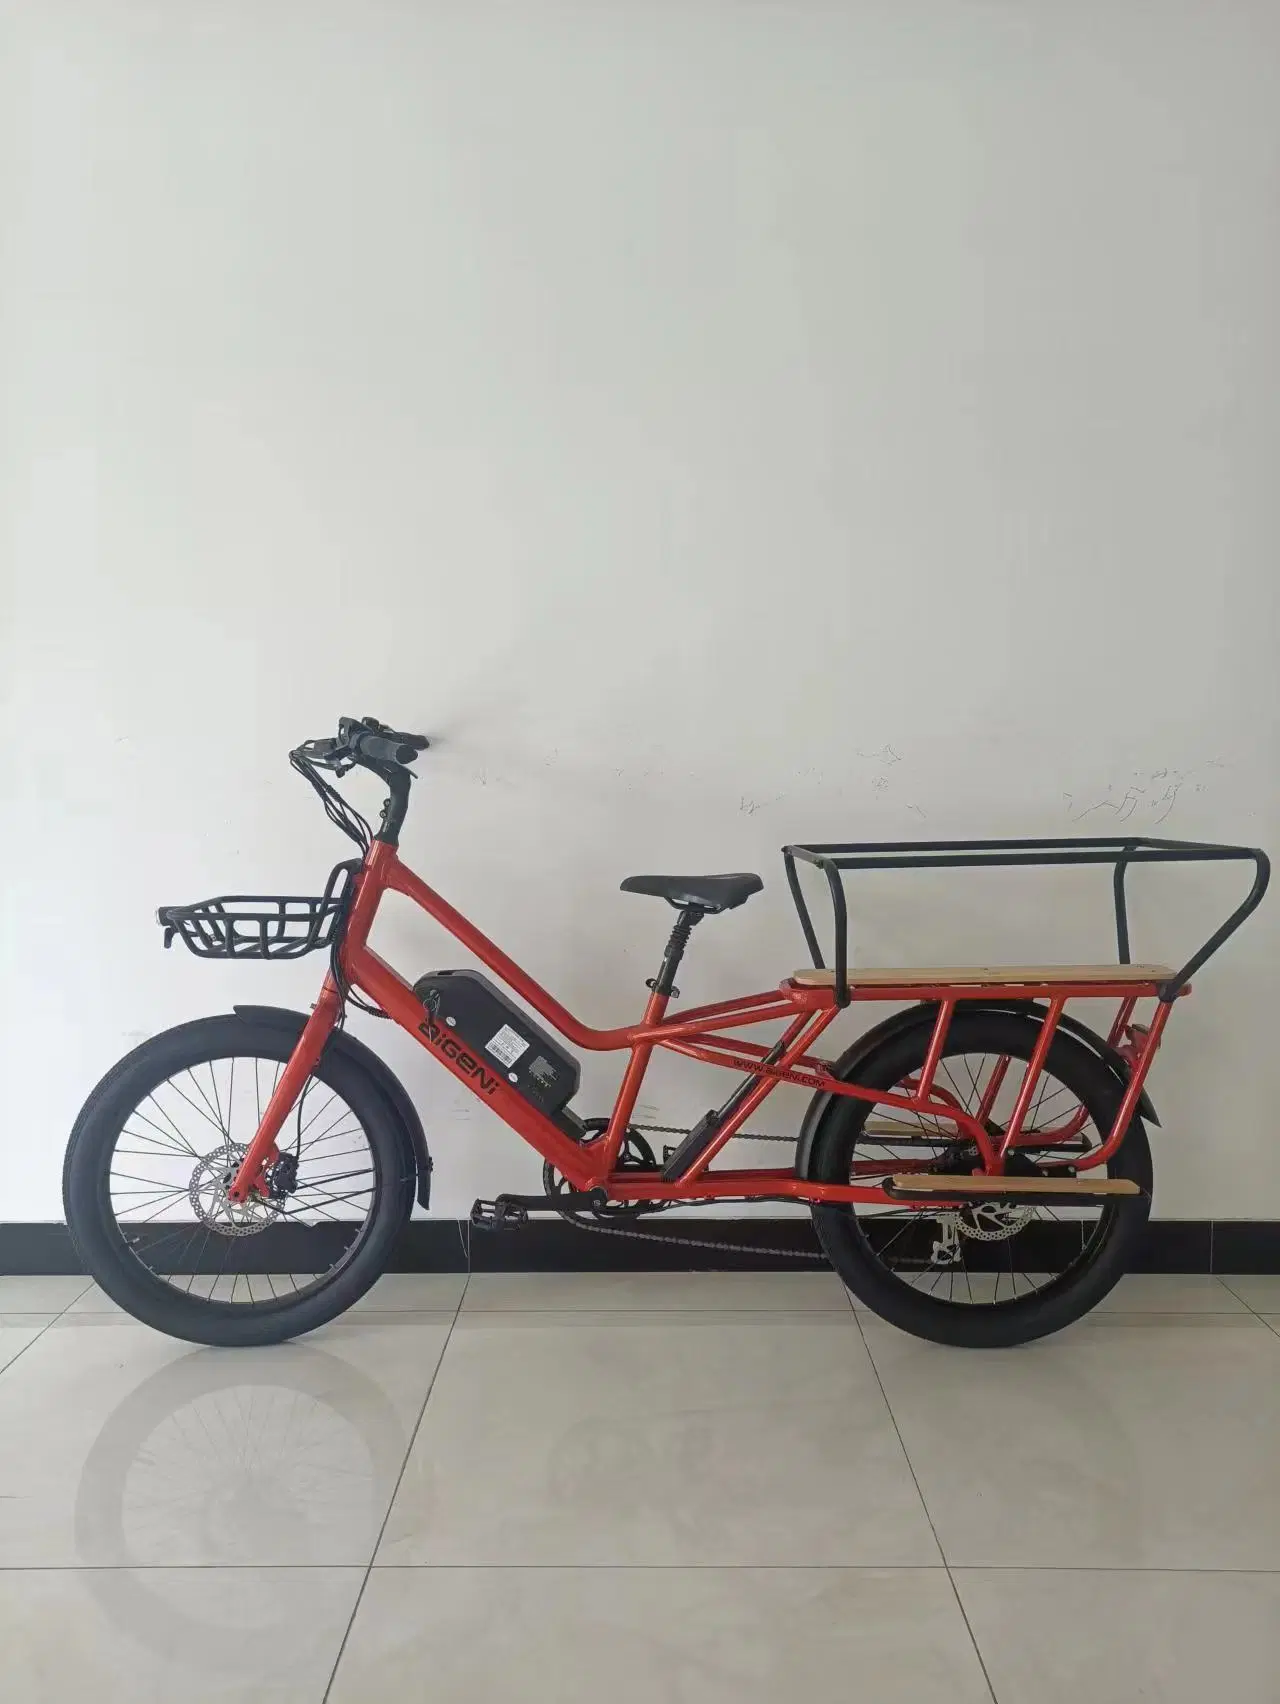 Af2419дешевой Китайской Народной Республики E-Bike CE EN15194, утвержденных для взрослых